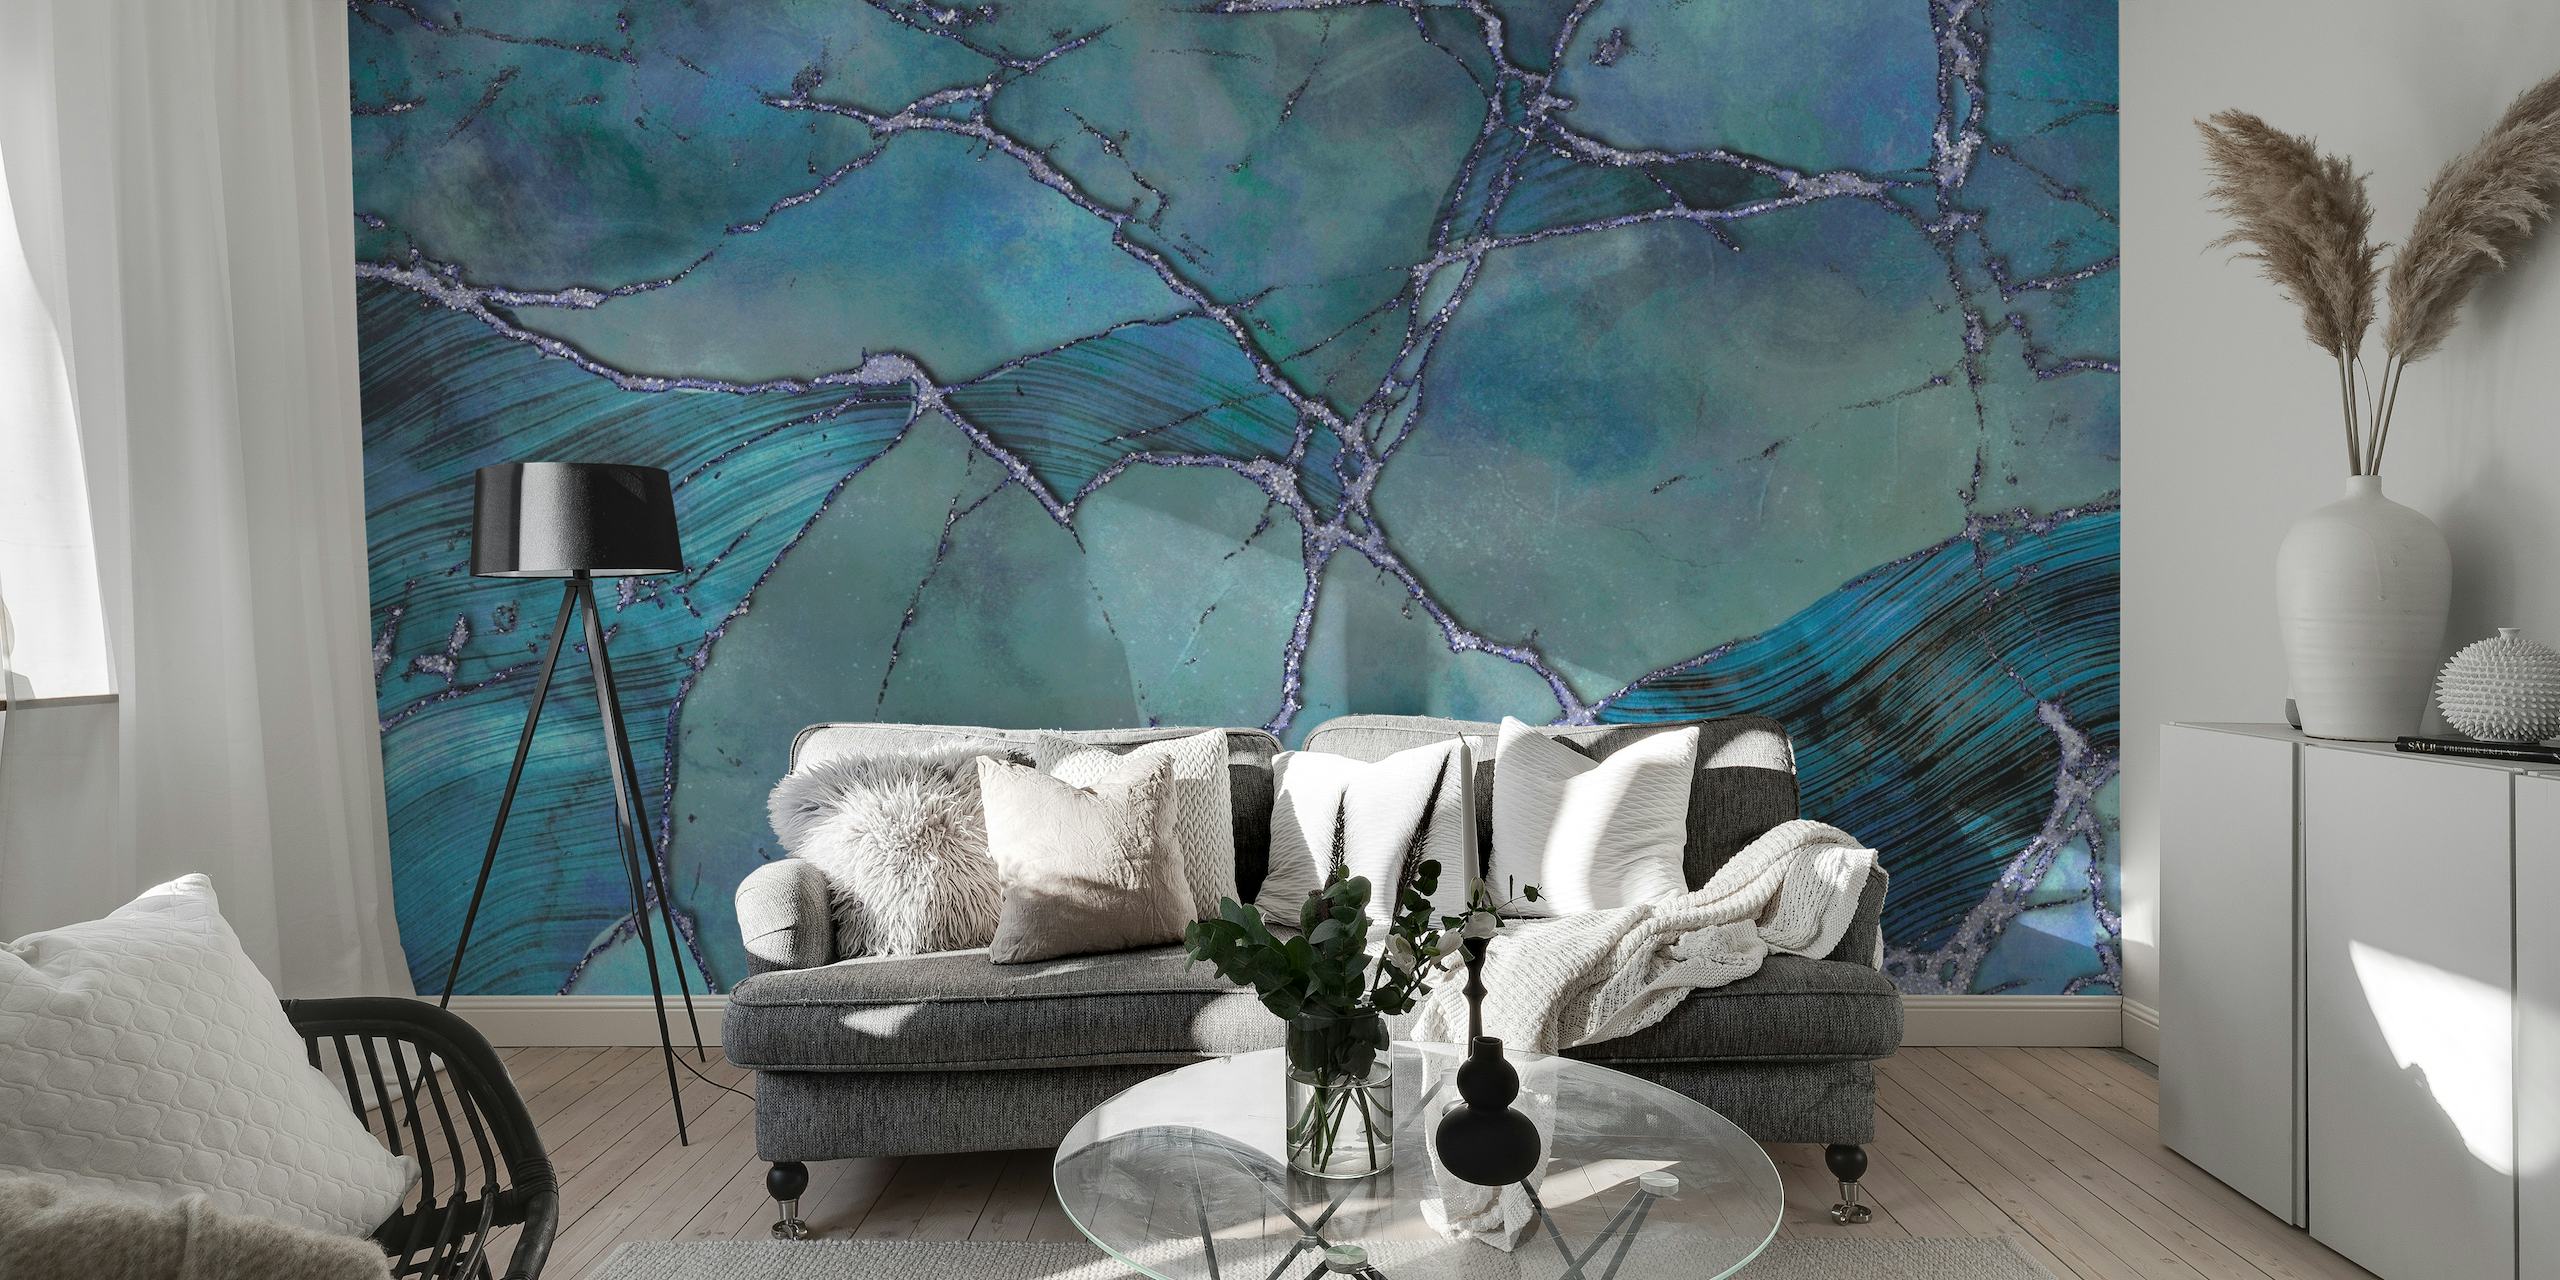 Luxuoso fotomural vinílico de parede com textura de pedra preciosa em mármore azul com padrões giratórios e tons ricos.